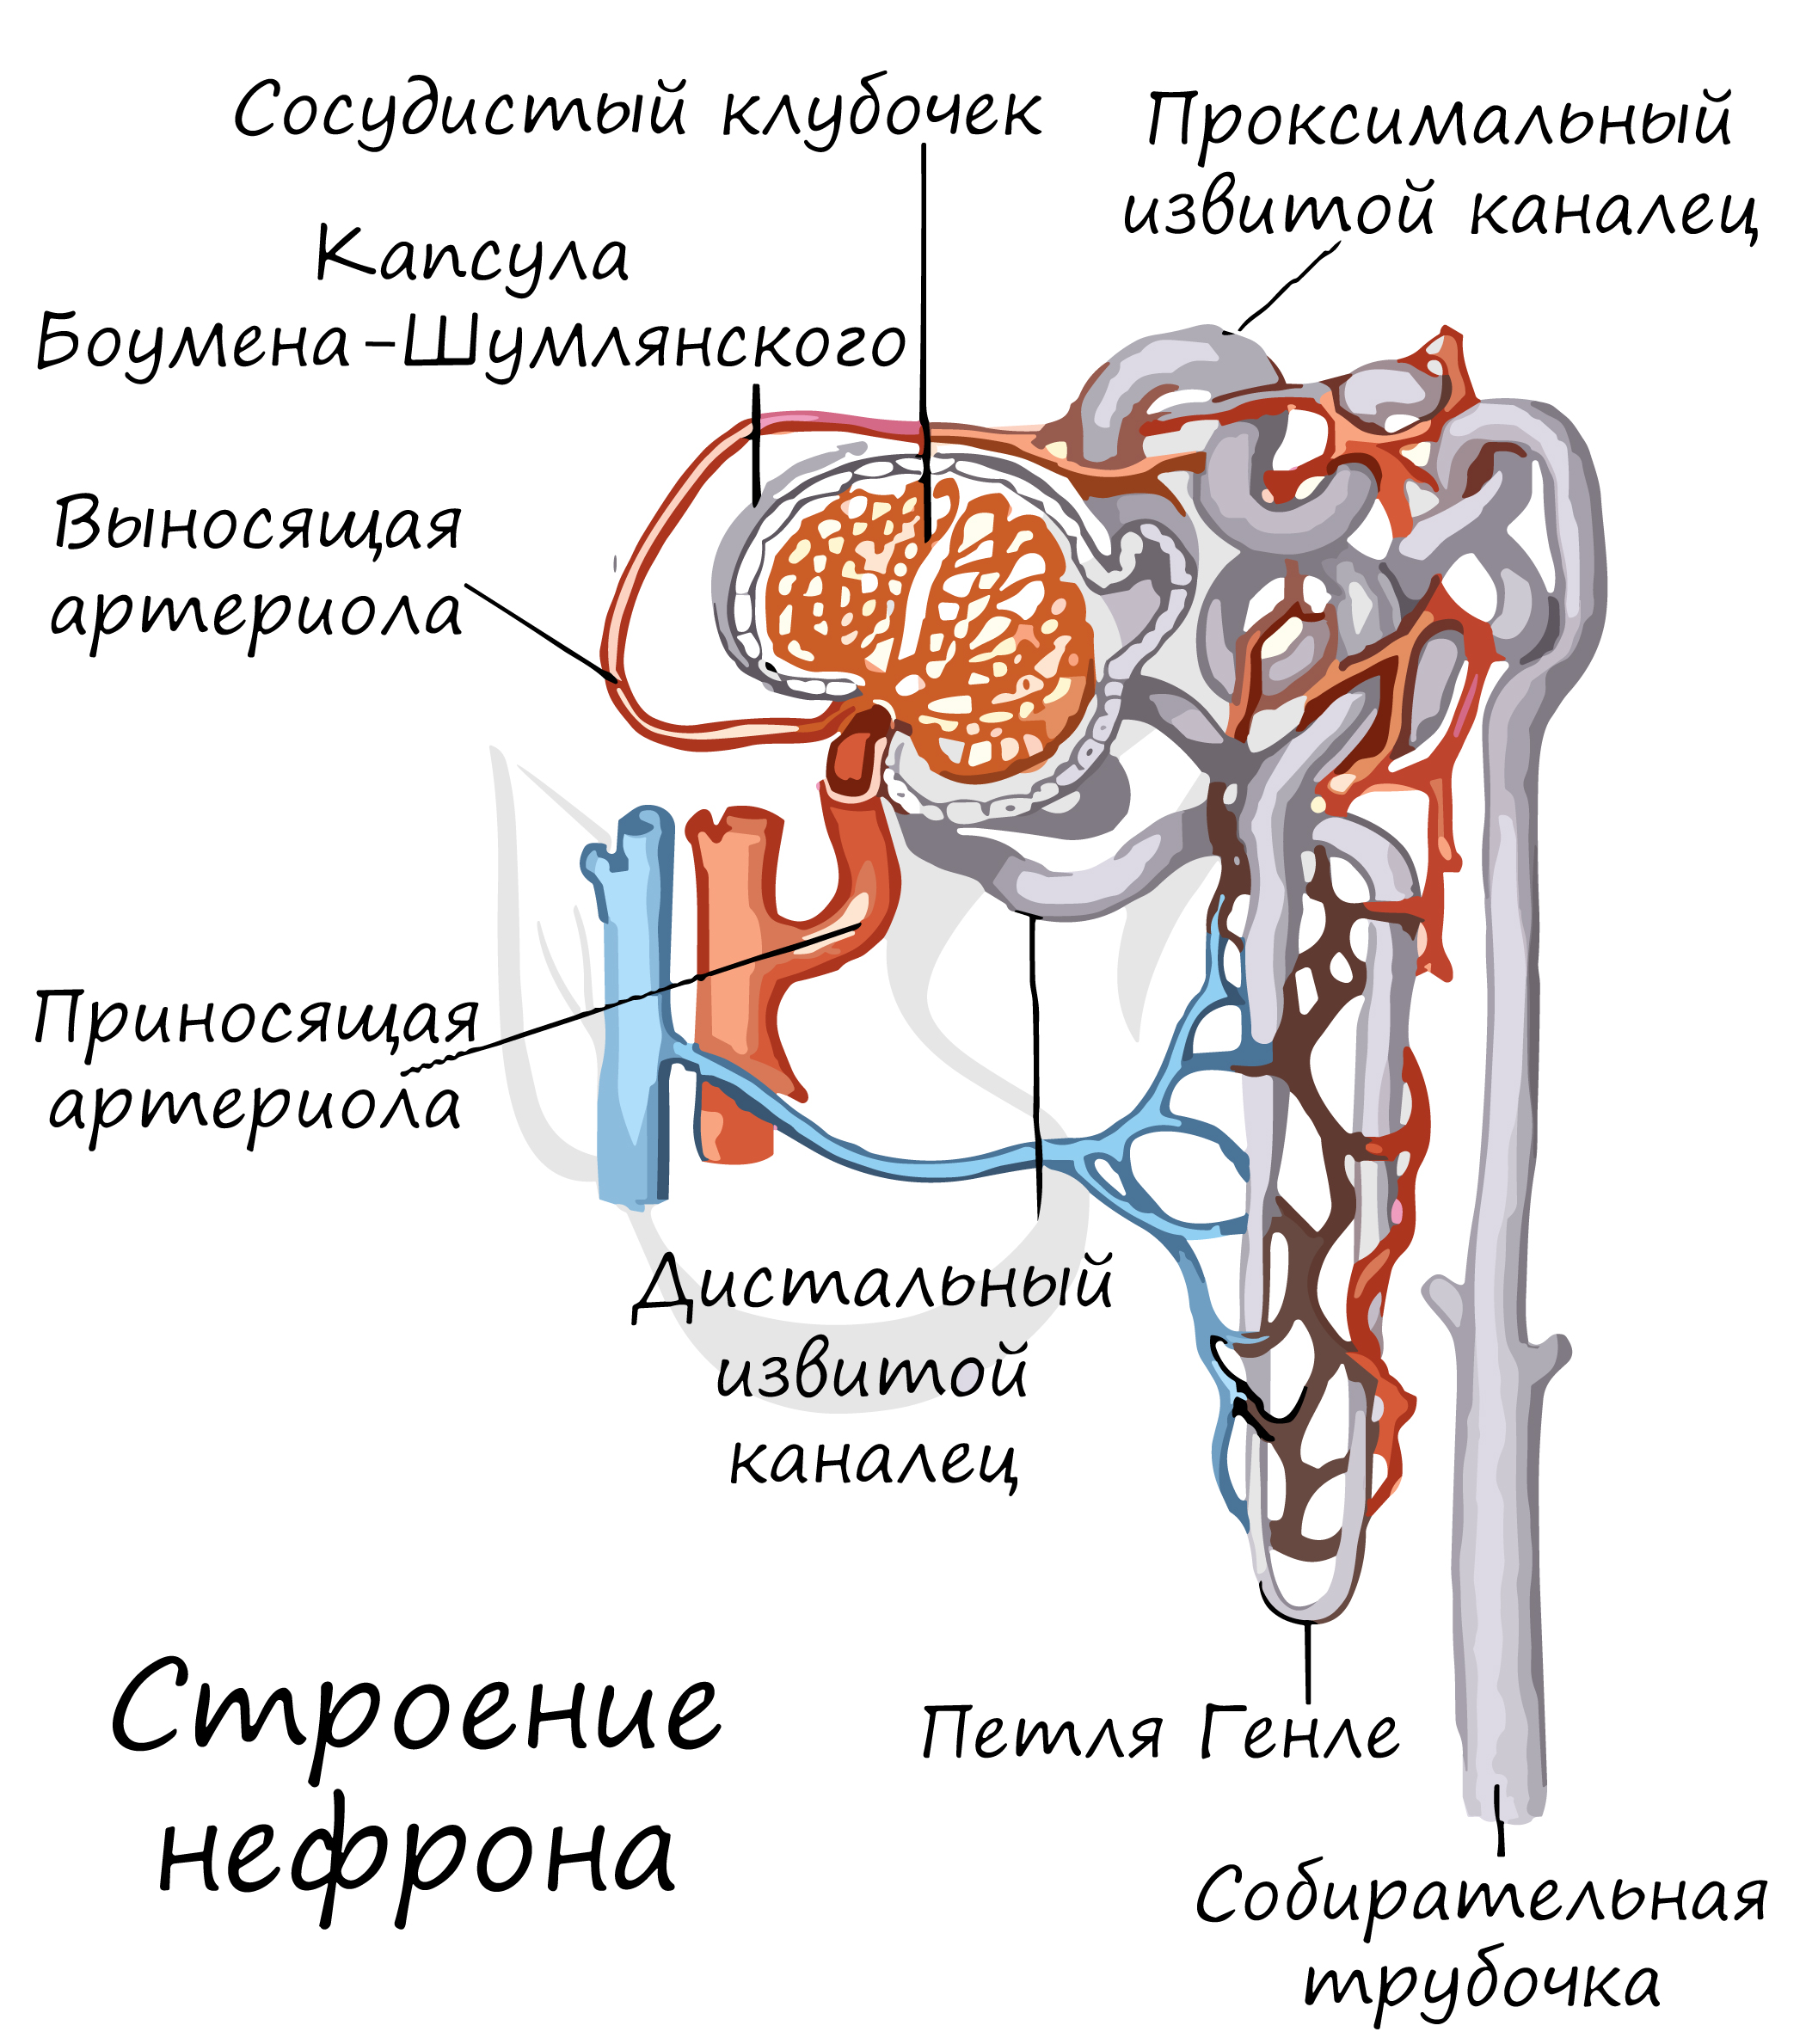 Какая кровь в клубочке нефрона. Выделительная система человека нефрон. Выносящая артериола нефрона. Мальпигиево тельце нефрона. Мочевыделительная система нефрон.